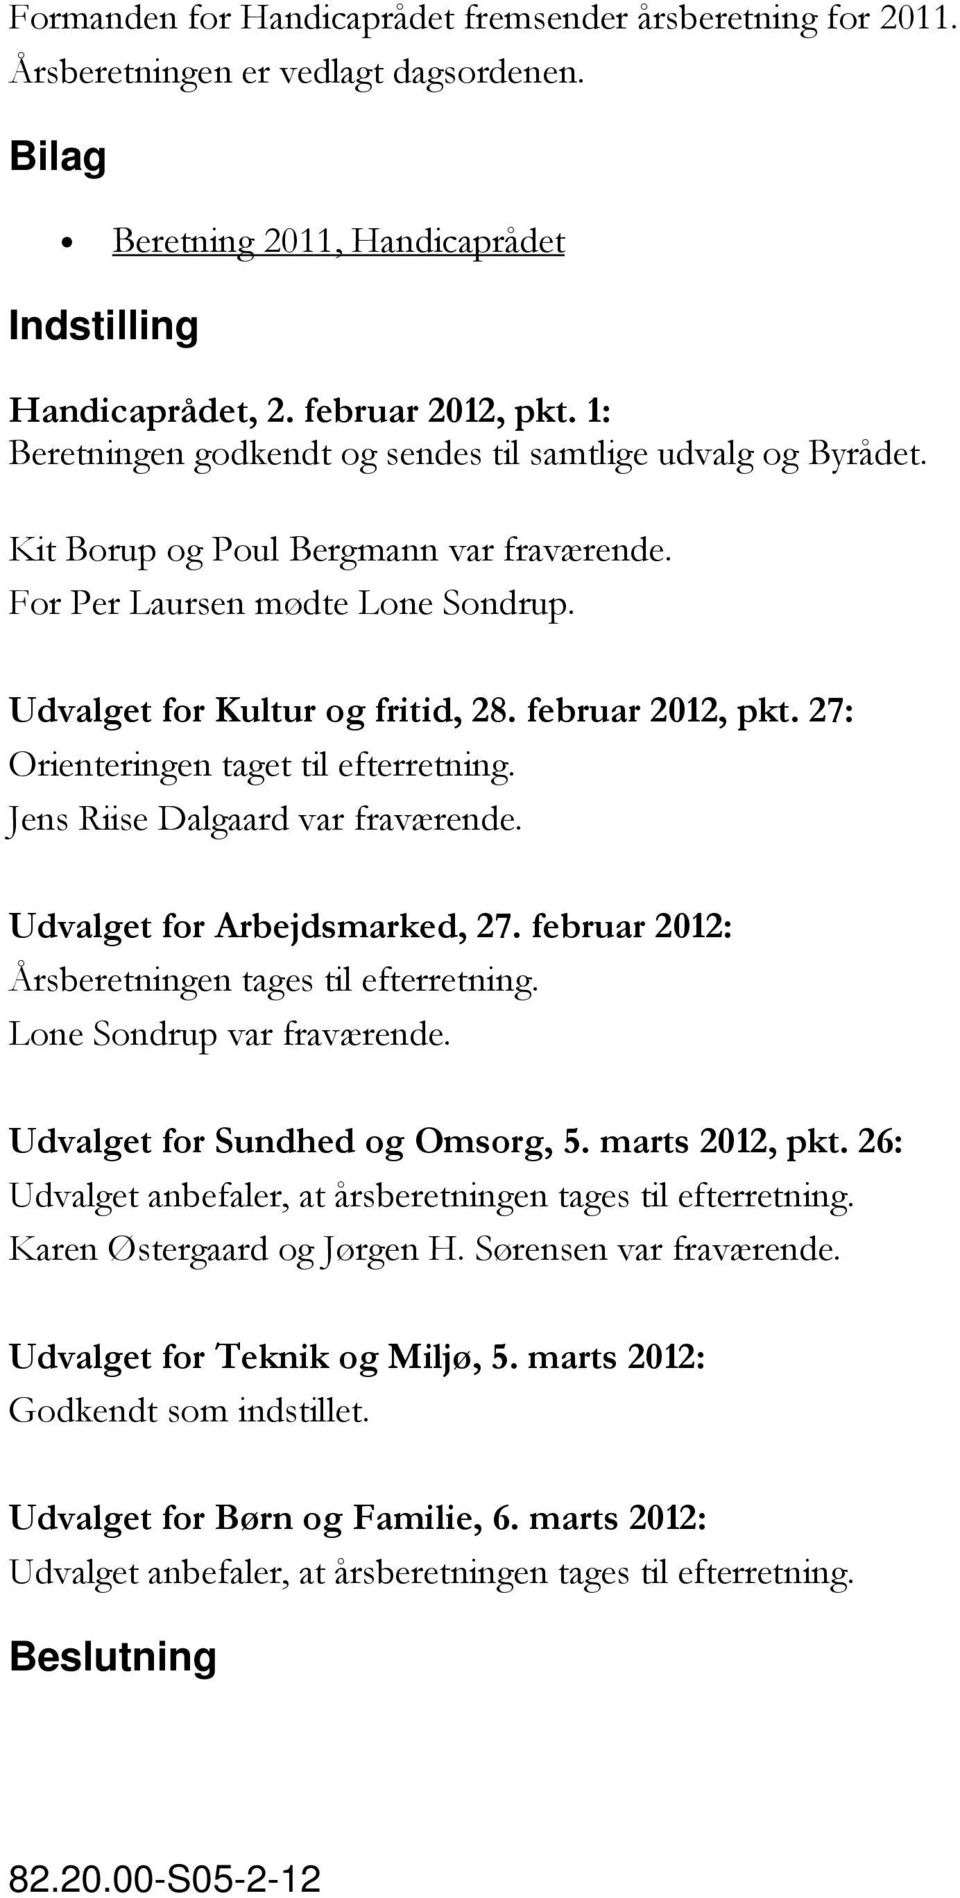 27: Orienteringen taget til efterretning. Jens Riise Dalgaard var fraværende. Udvalget for Arbejdsmarked, 27. februar 2012: Årsberetningen tages til efterretning. Lone Sondrup var fraværende.